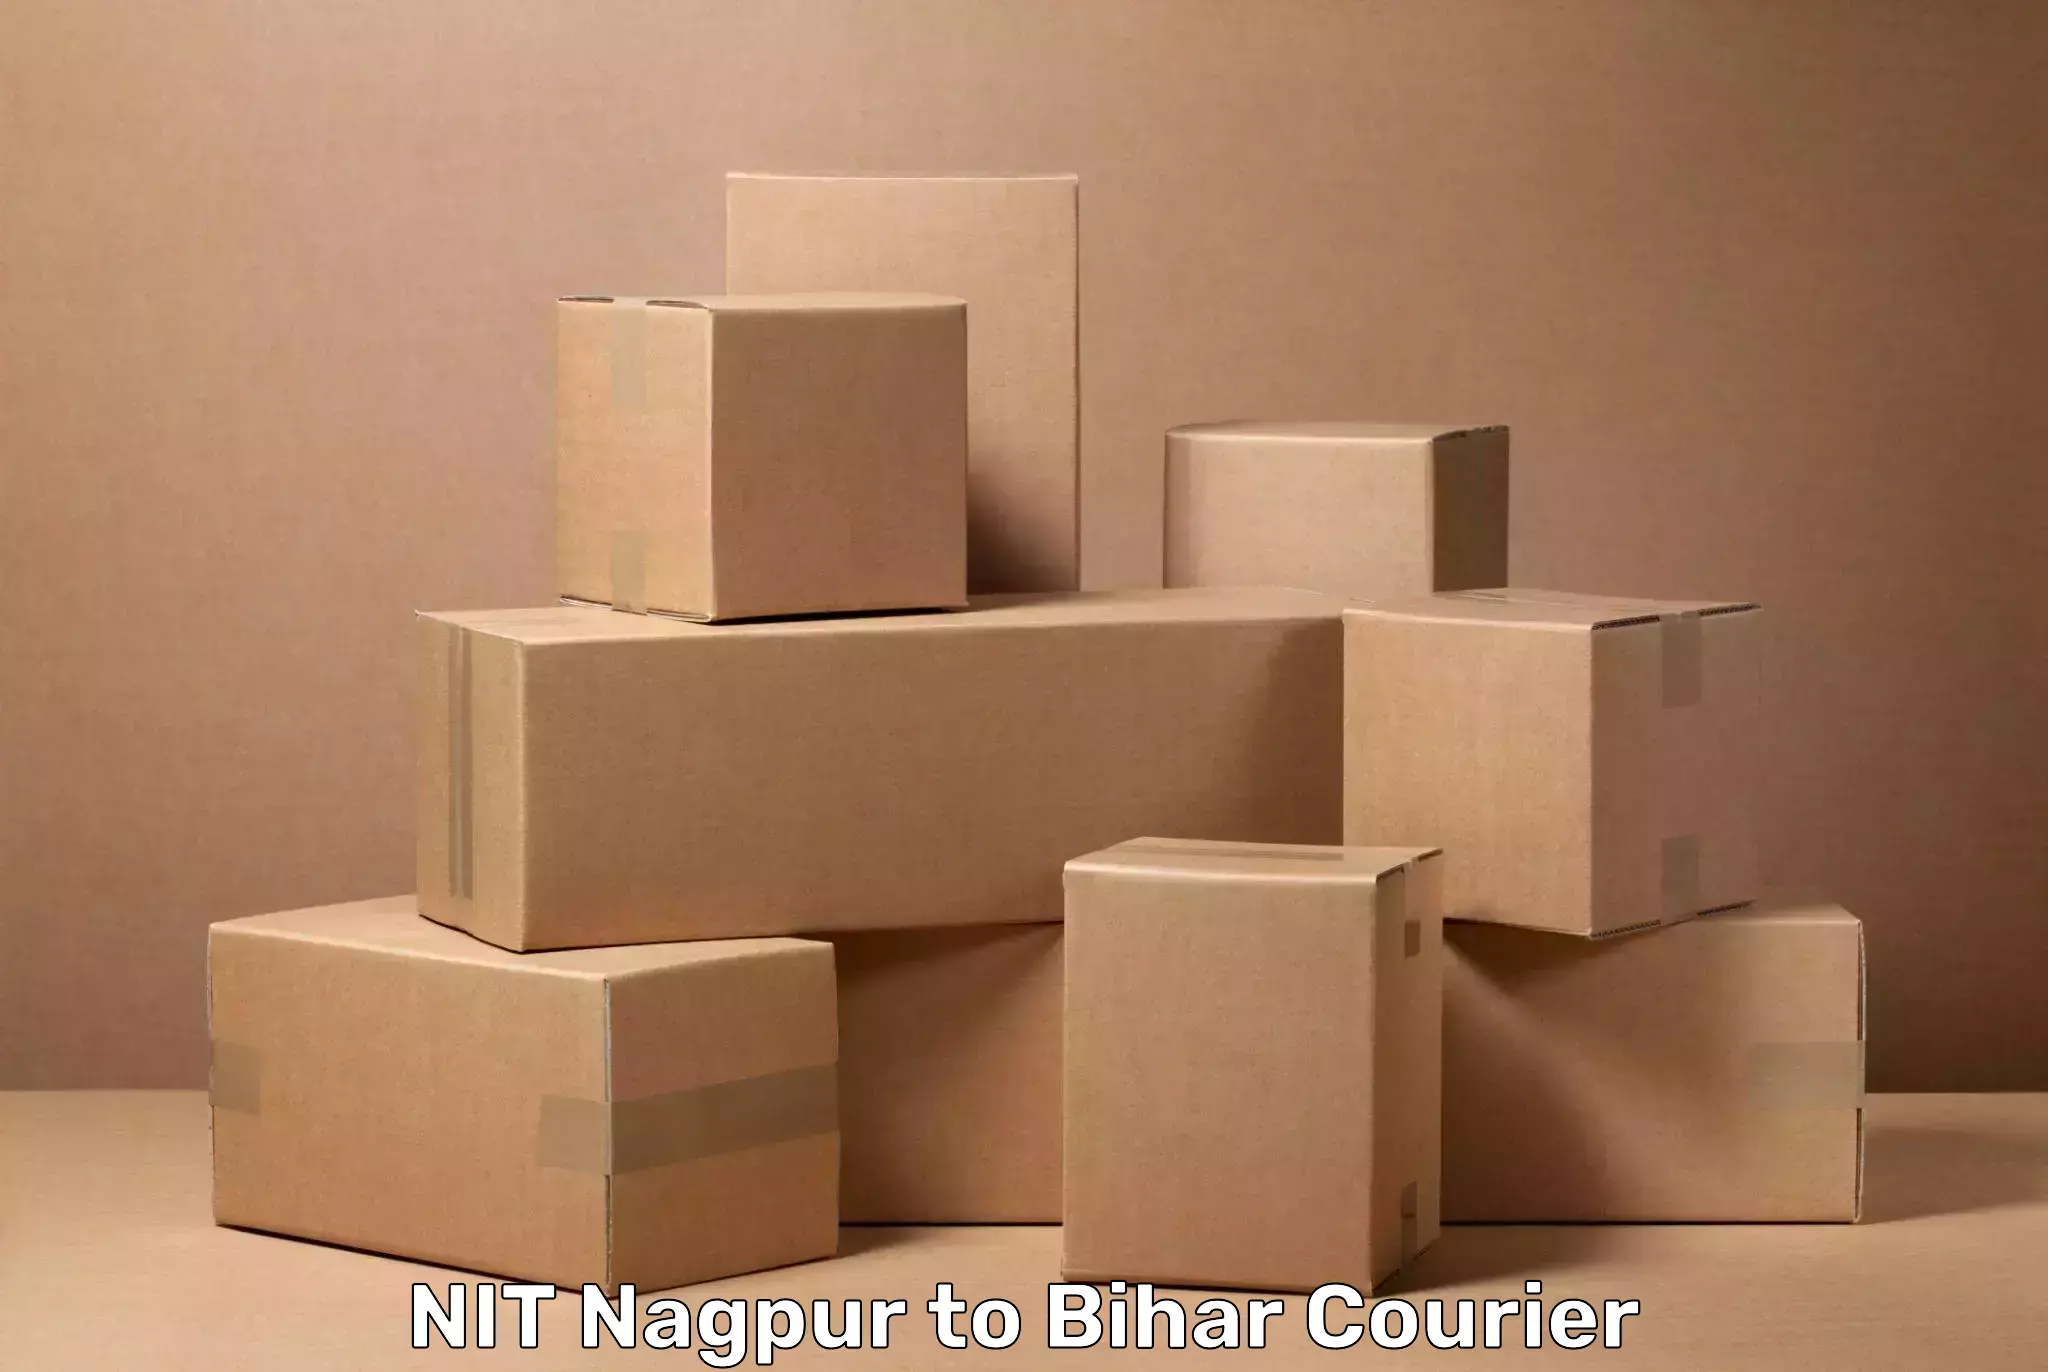 Baggage courier service NIT Nagpur to Darbhanga